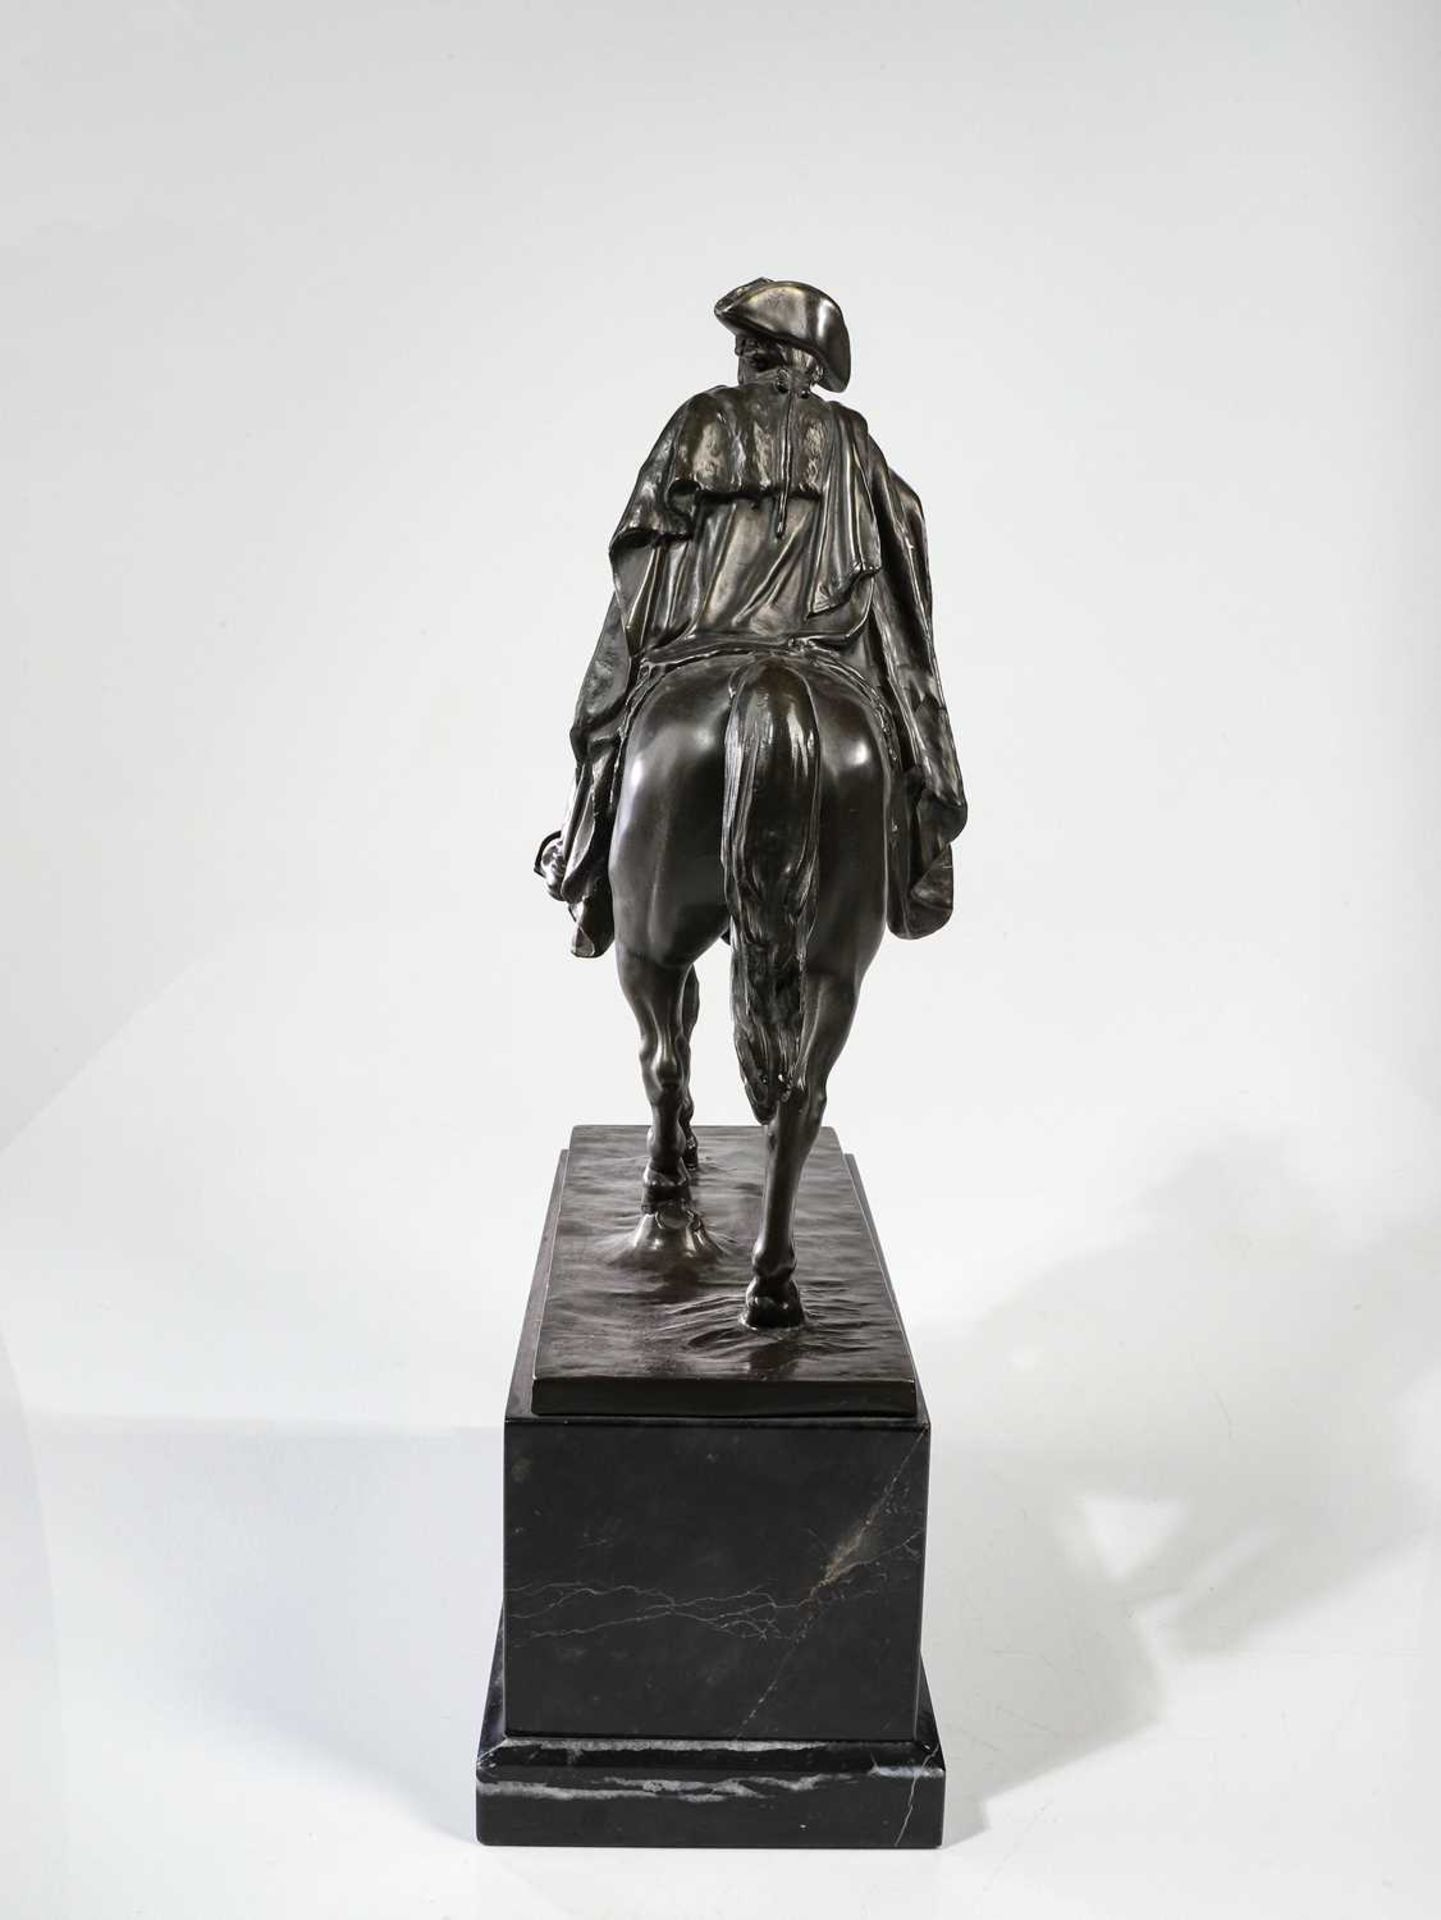 Skulptur von "Friedrich der Große" - Image 5 of 27